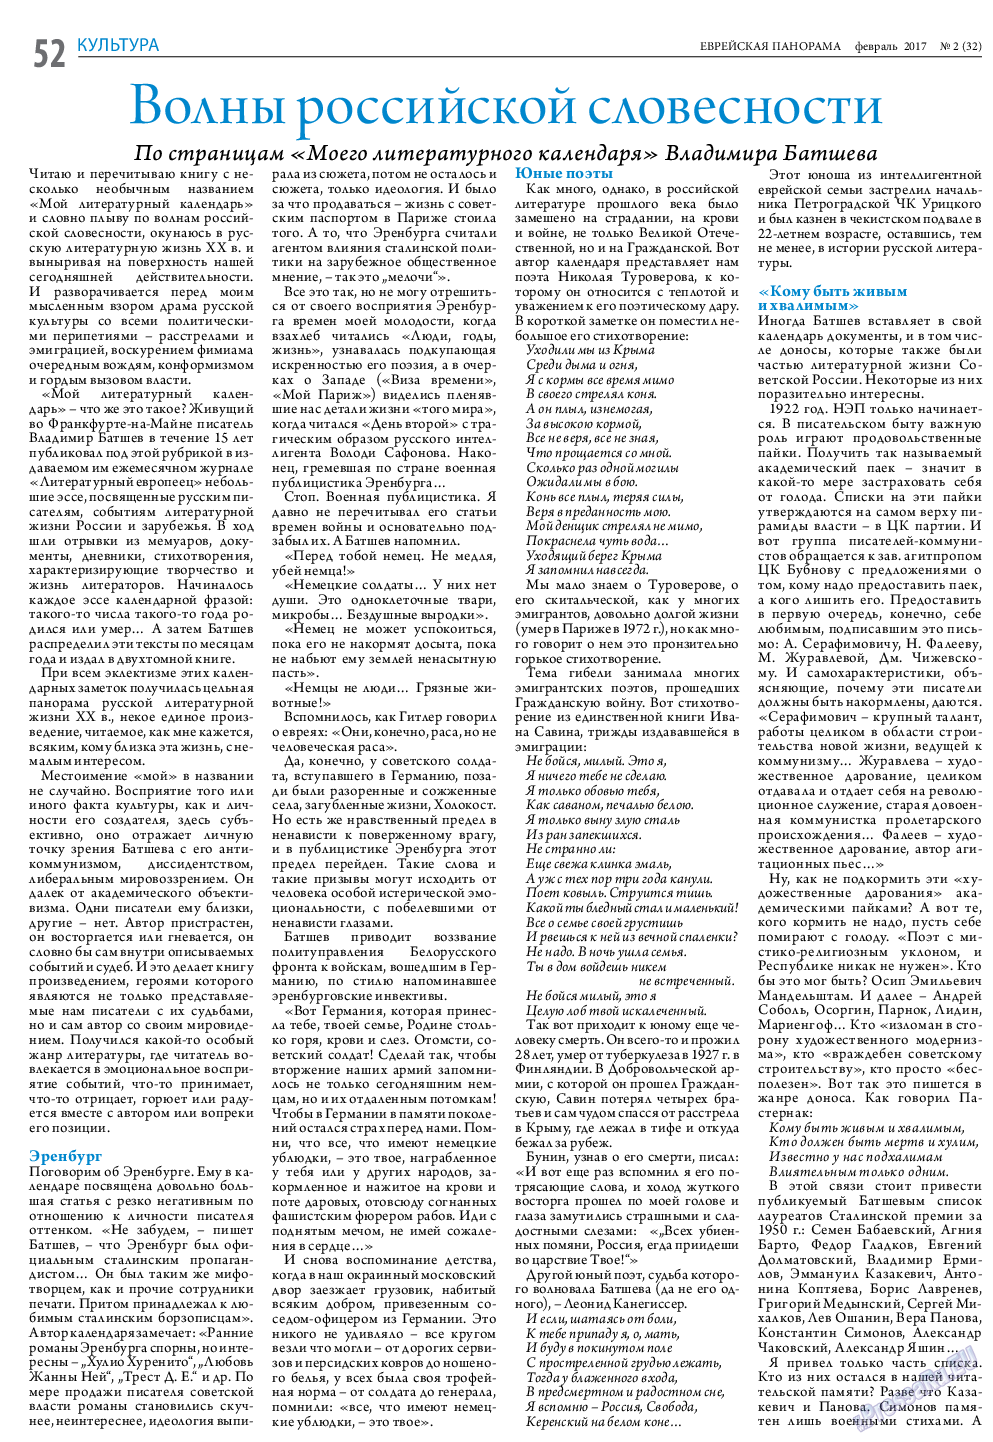 Еврейская панорама (газета). 2017 год, номер 2, стр. 52